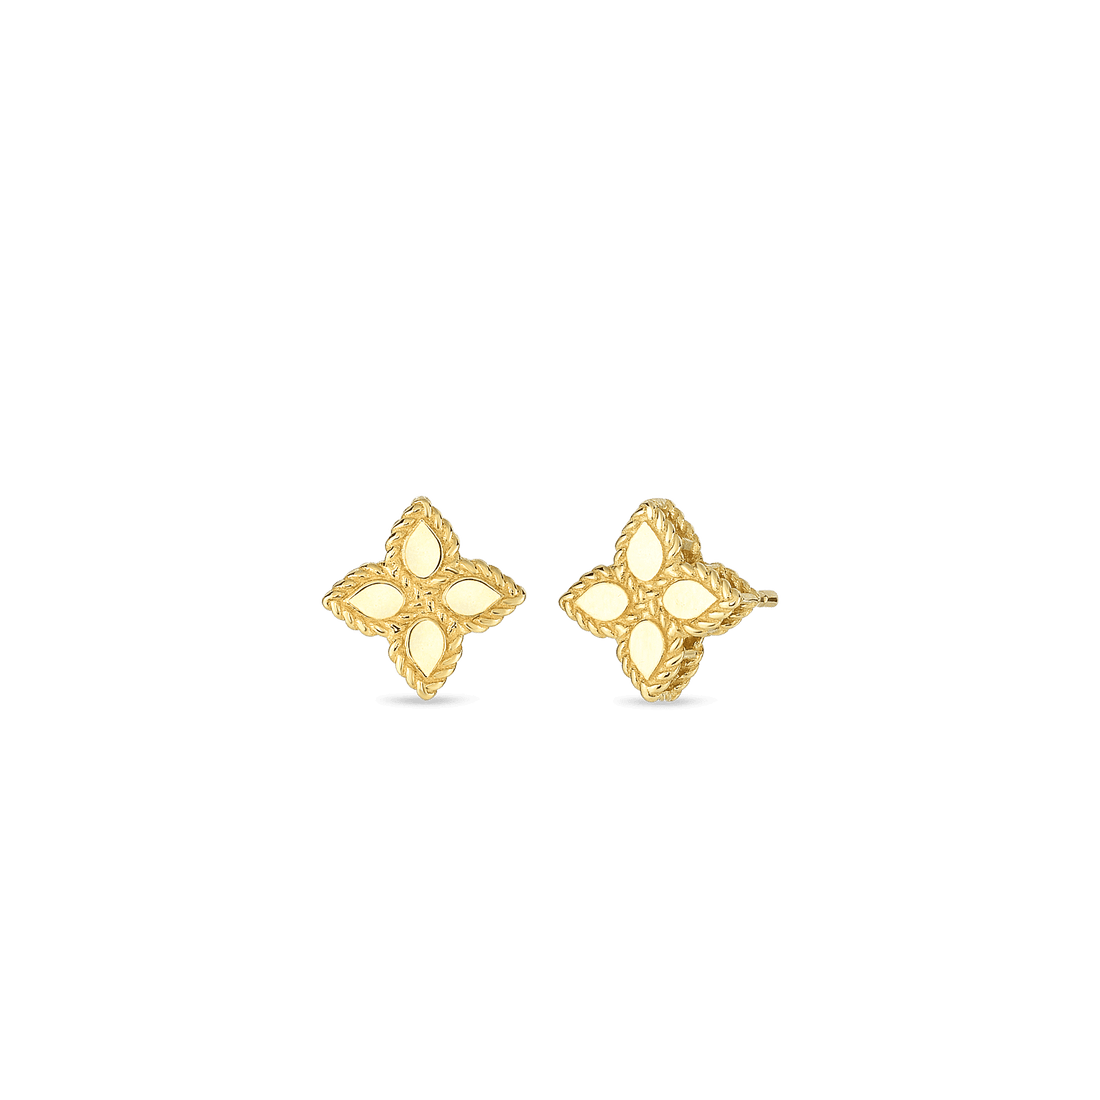 Roberto Coin Small Princess Flower Stud Earrings - Skeie's Jewelers